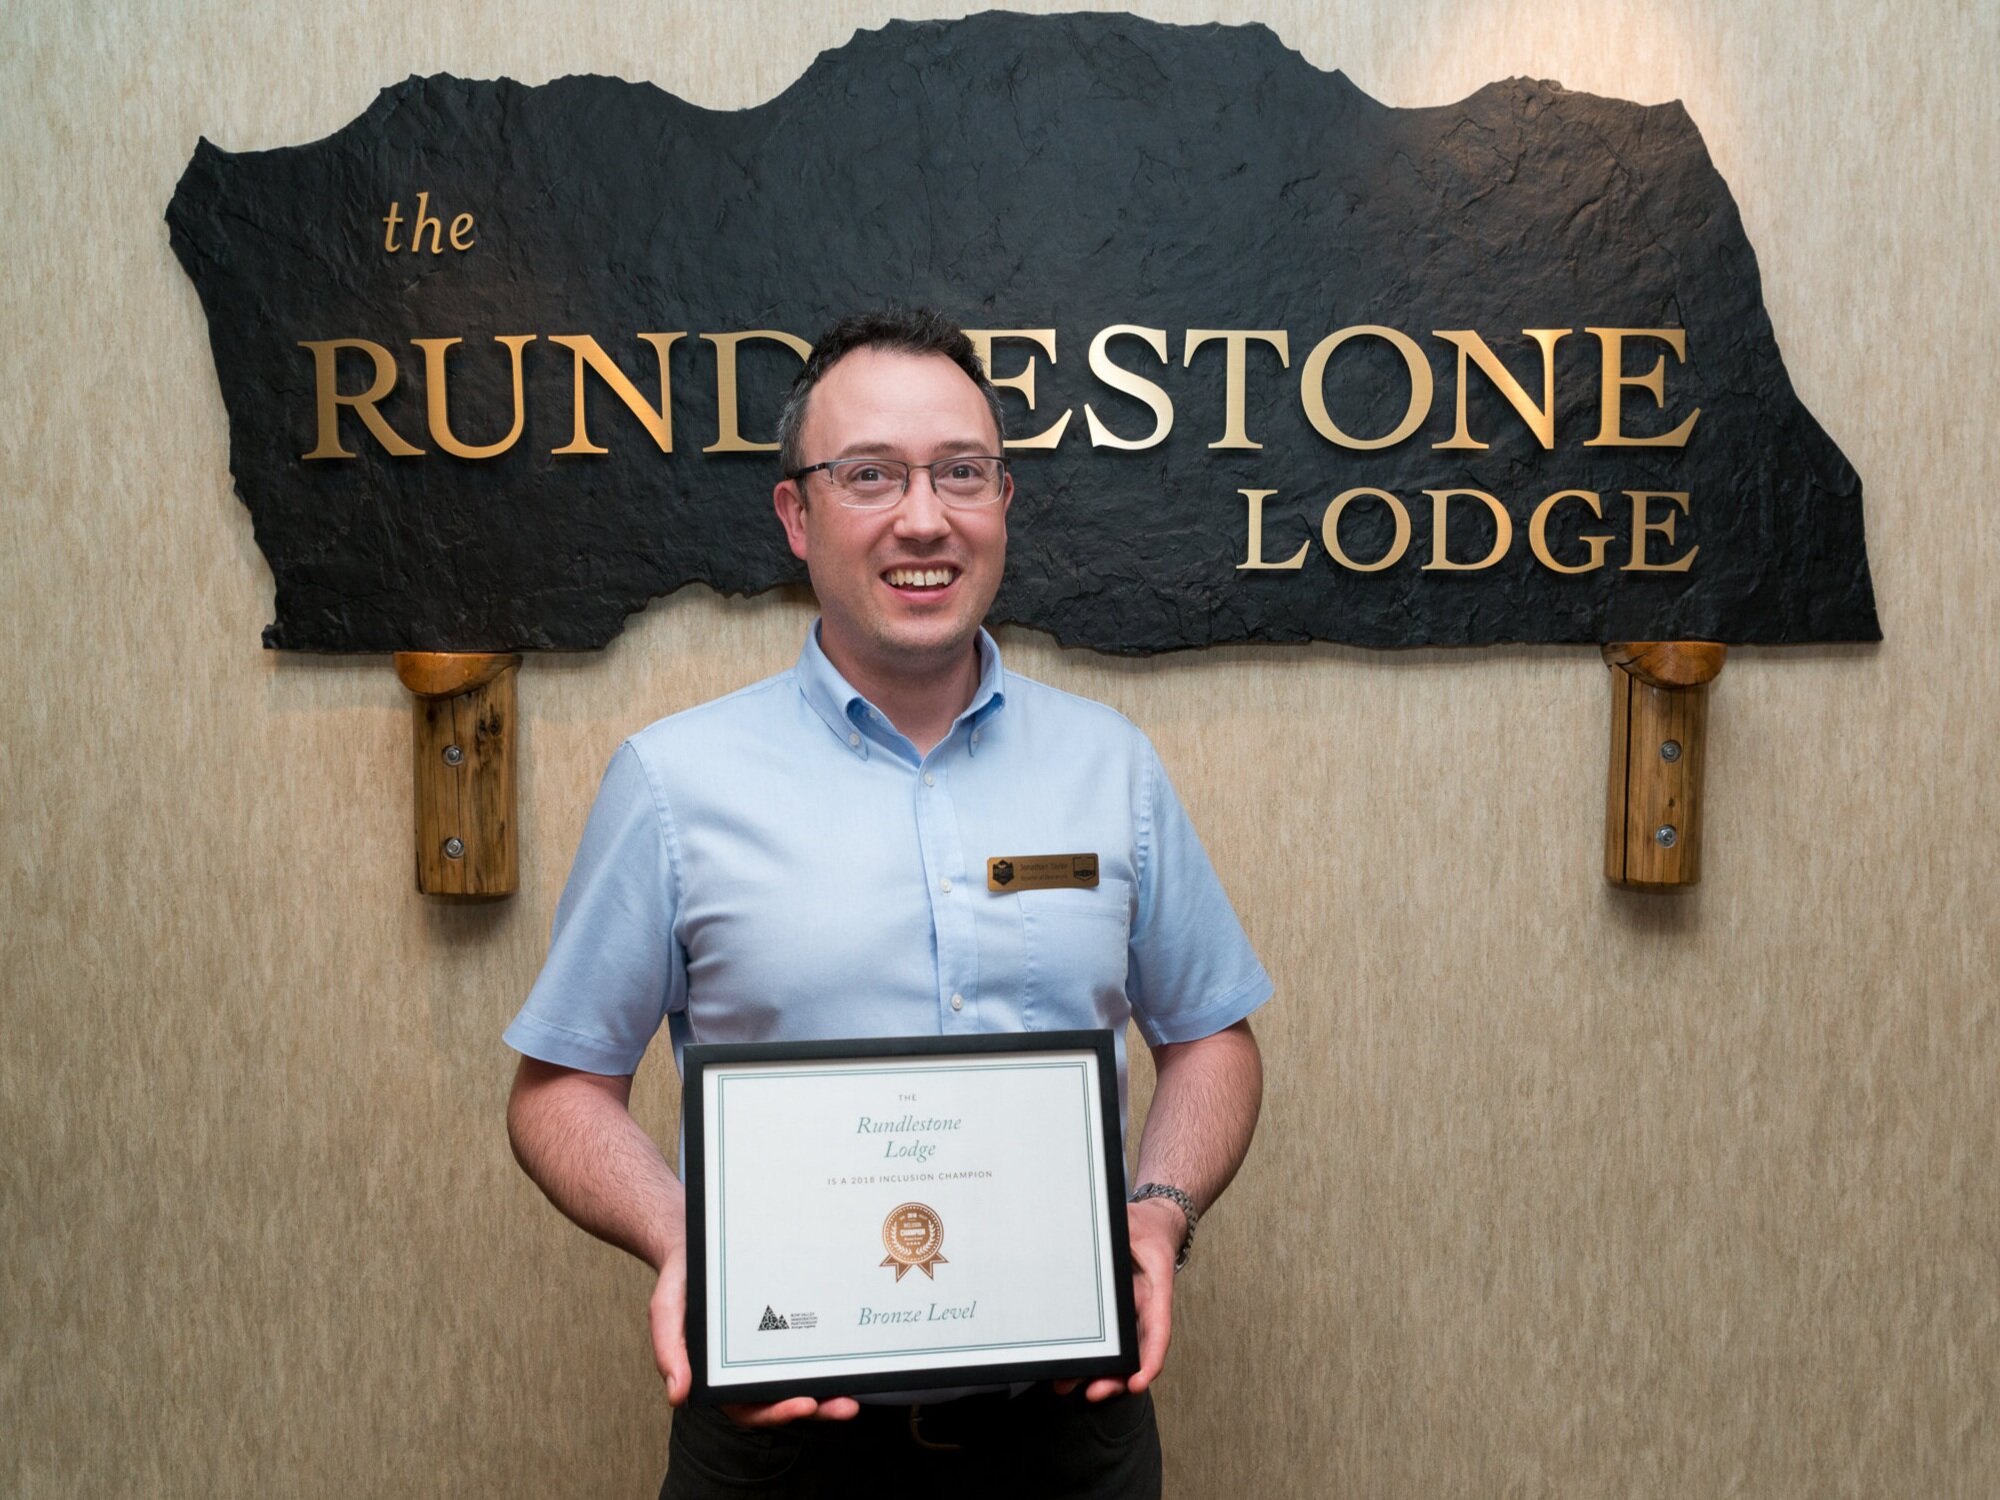 Rundlestone Lodge - 2018 Inclusion Champion - Bronze Level